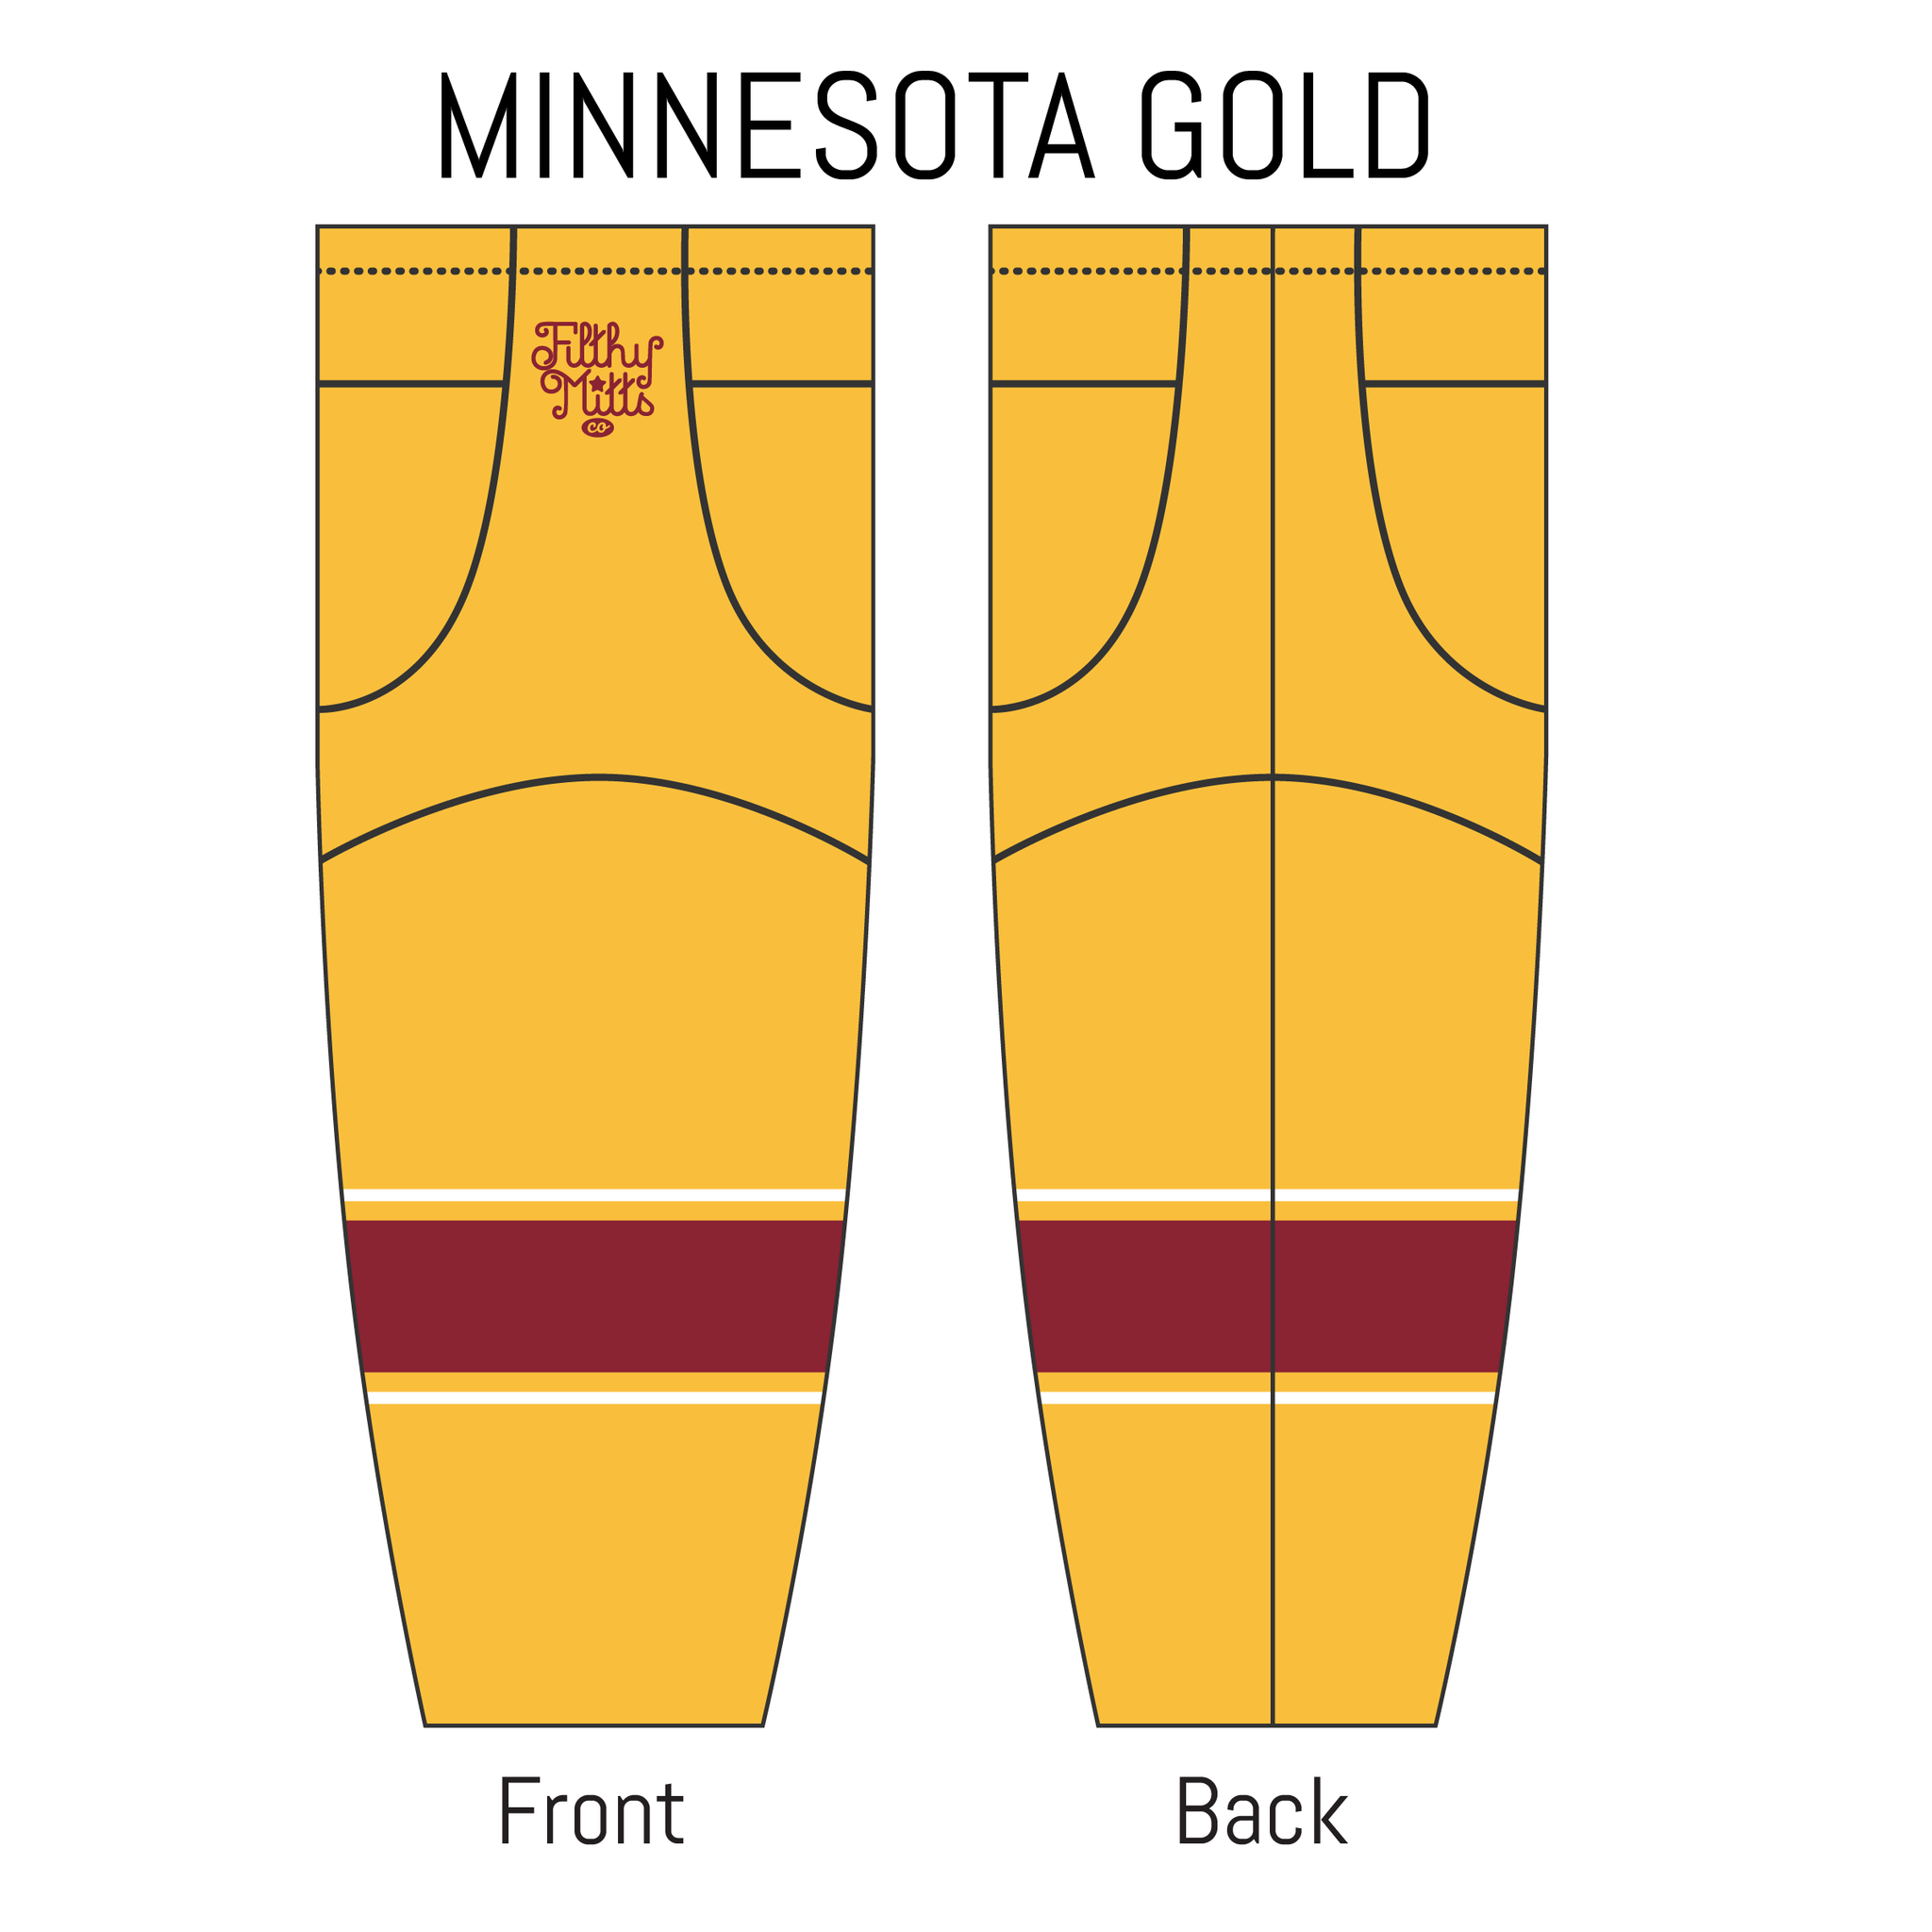 University of Minnesota Socks, Minnesota Golden Gophers Socks